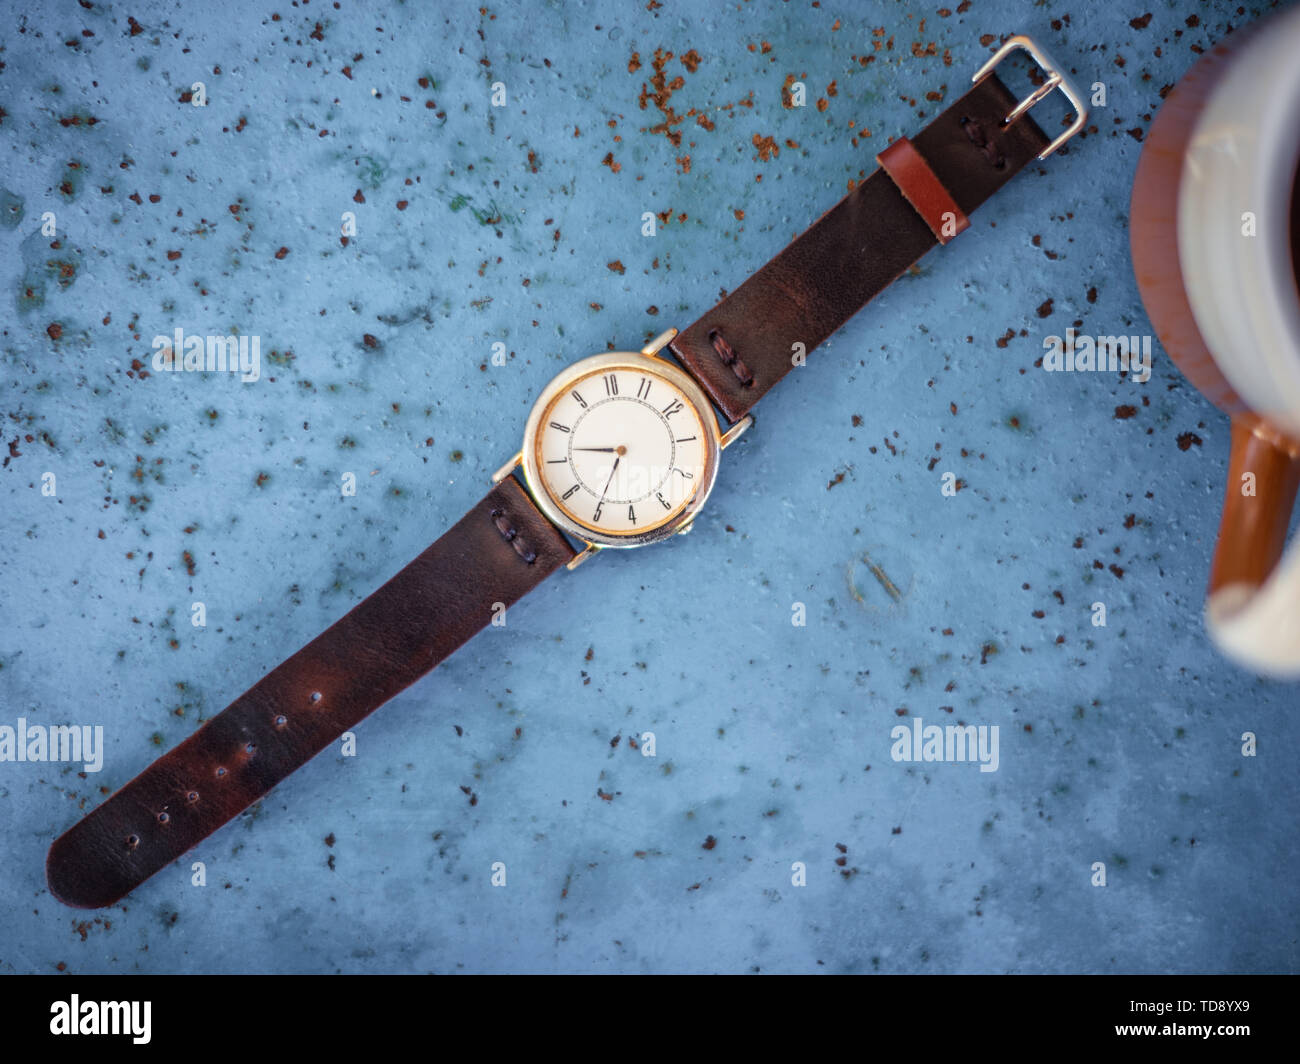 Vintage reloj de pulsera en el rústico banco de metal azul sugiriendo el tiempo es 07.00, una taza de café en el borde del bastidor. Foto de stock